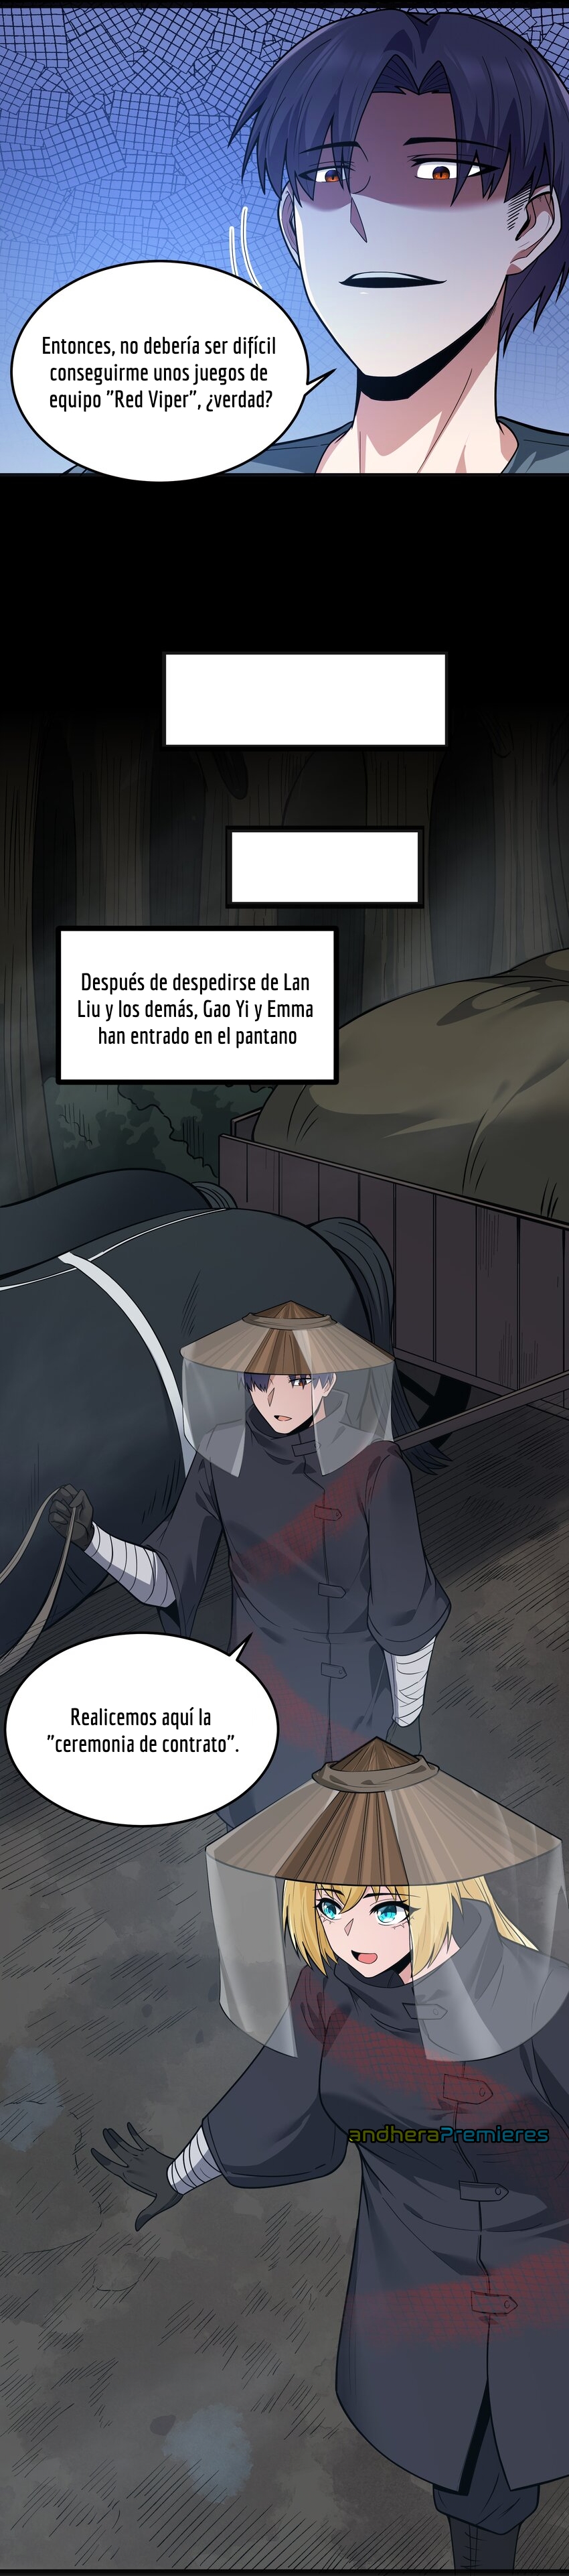 Manga El Héroe de la Avaricia Chapter 24 image number 16